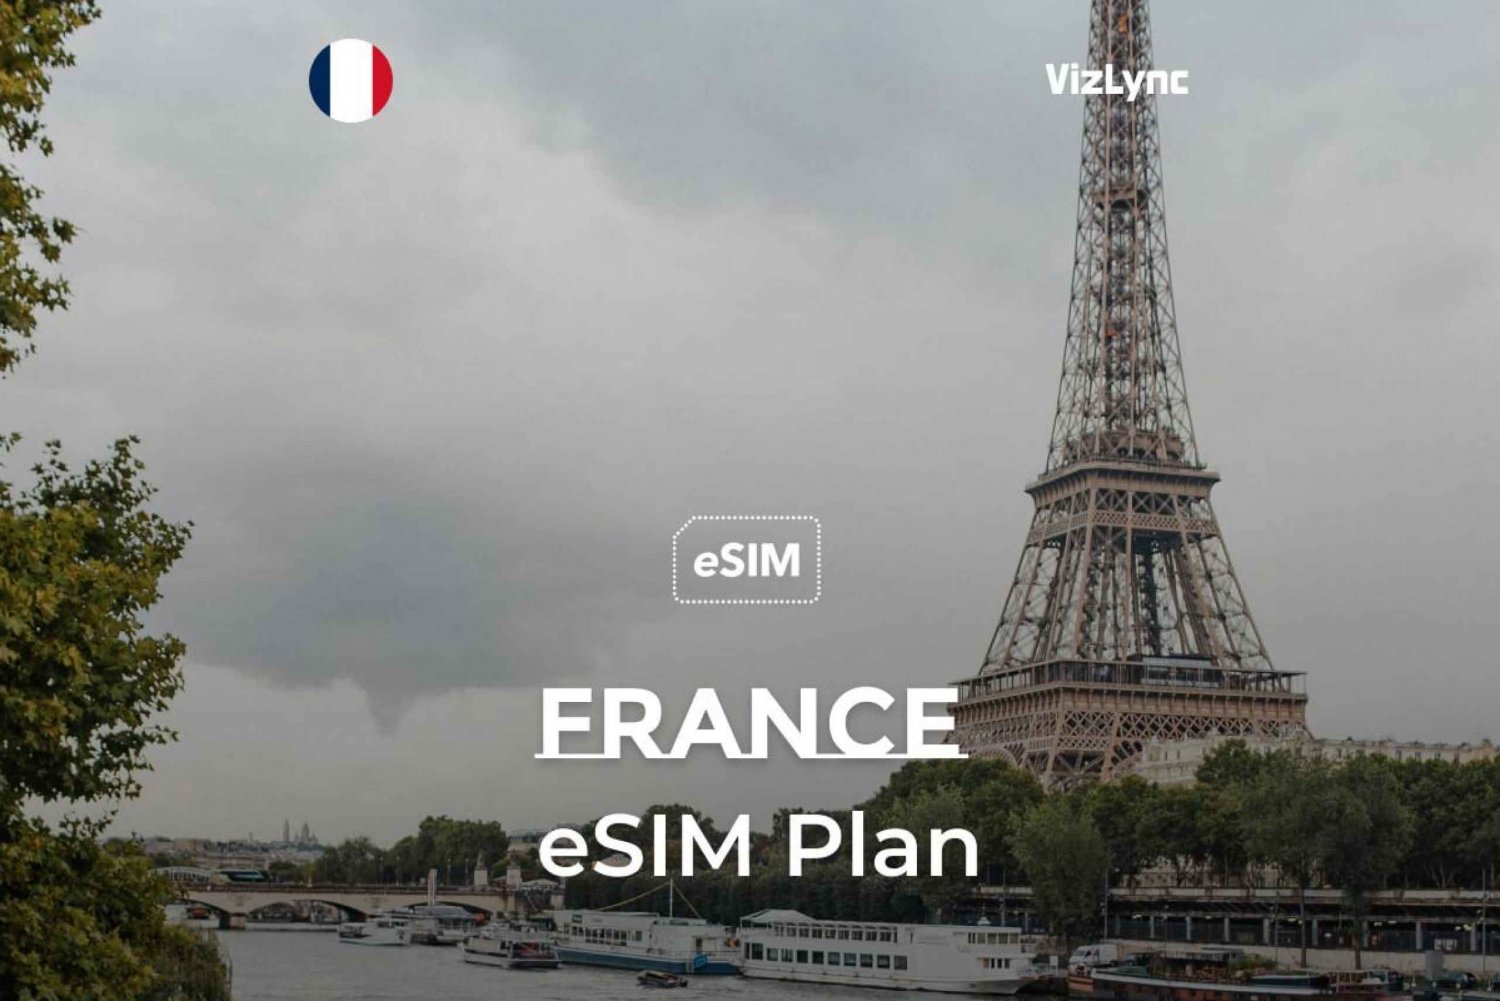 Piano eSIM per viaggi in Francia con chiamate e dati UE illimitati